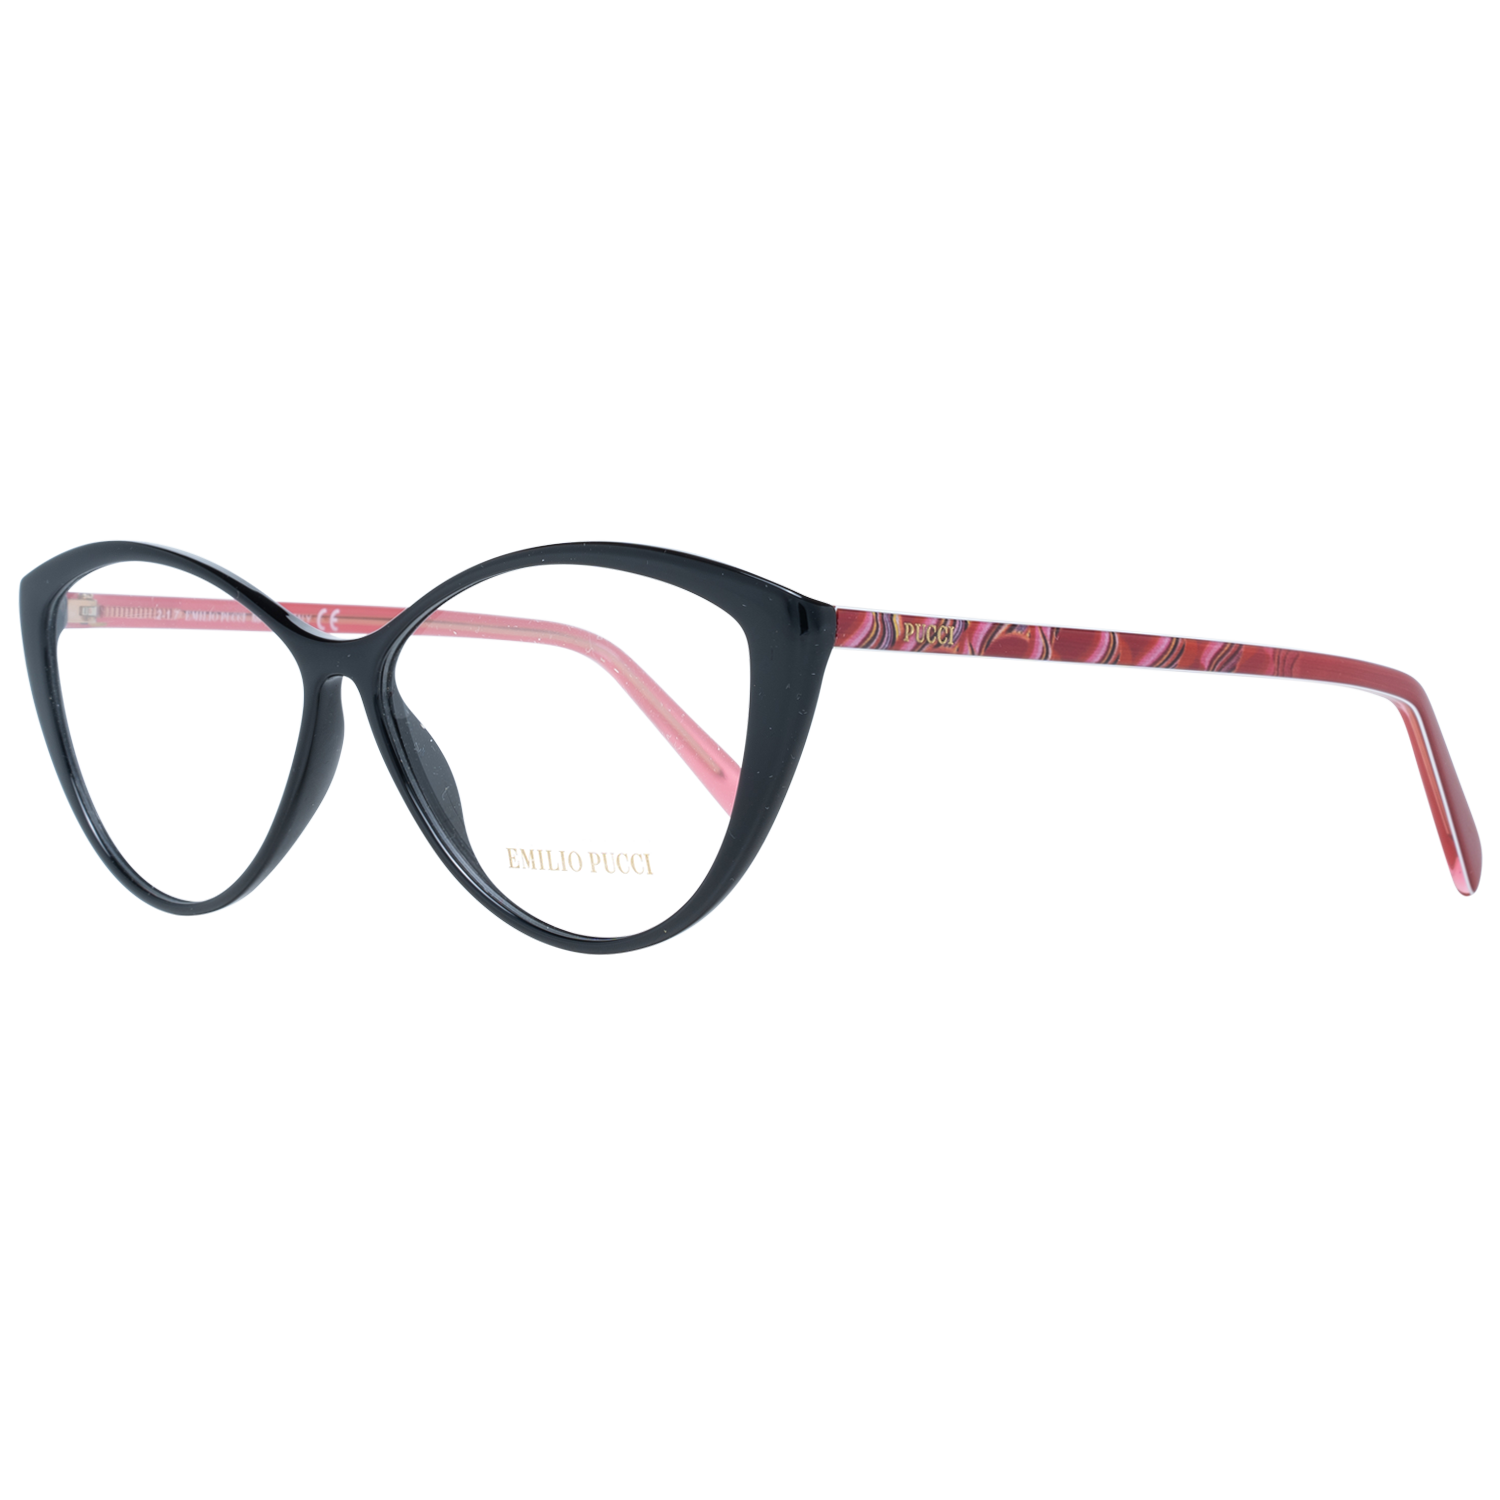 Emilio Pucci Frames Emilio Pucci Optical Frame EP5058 001 56 Eyeglasses Eyewear UK USA Australia 